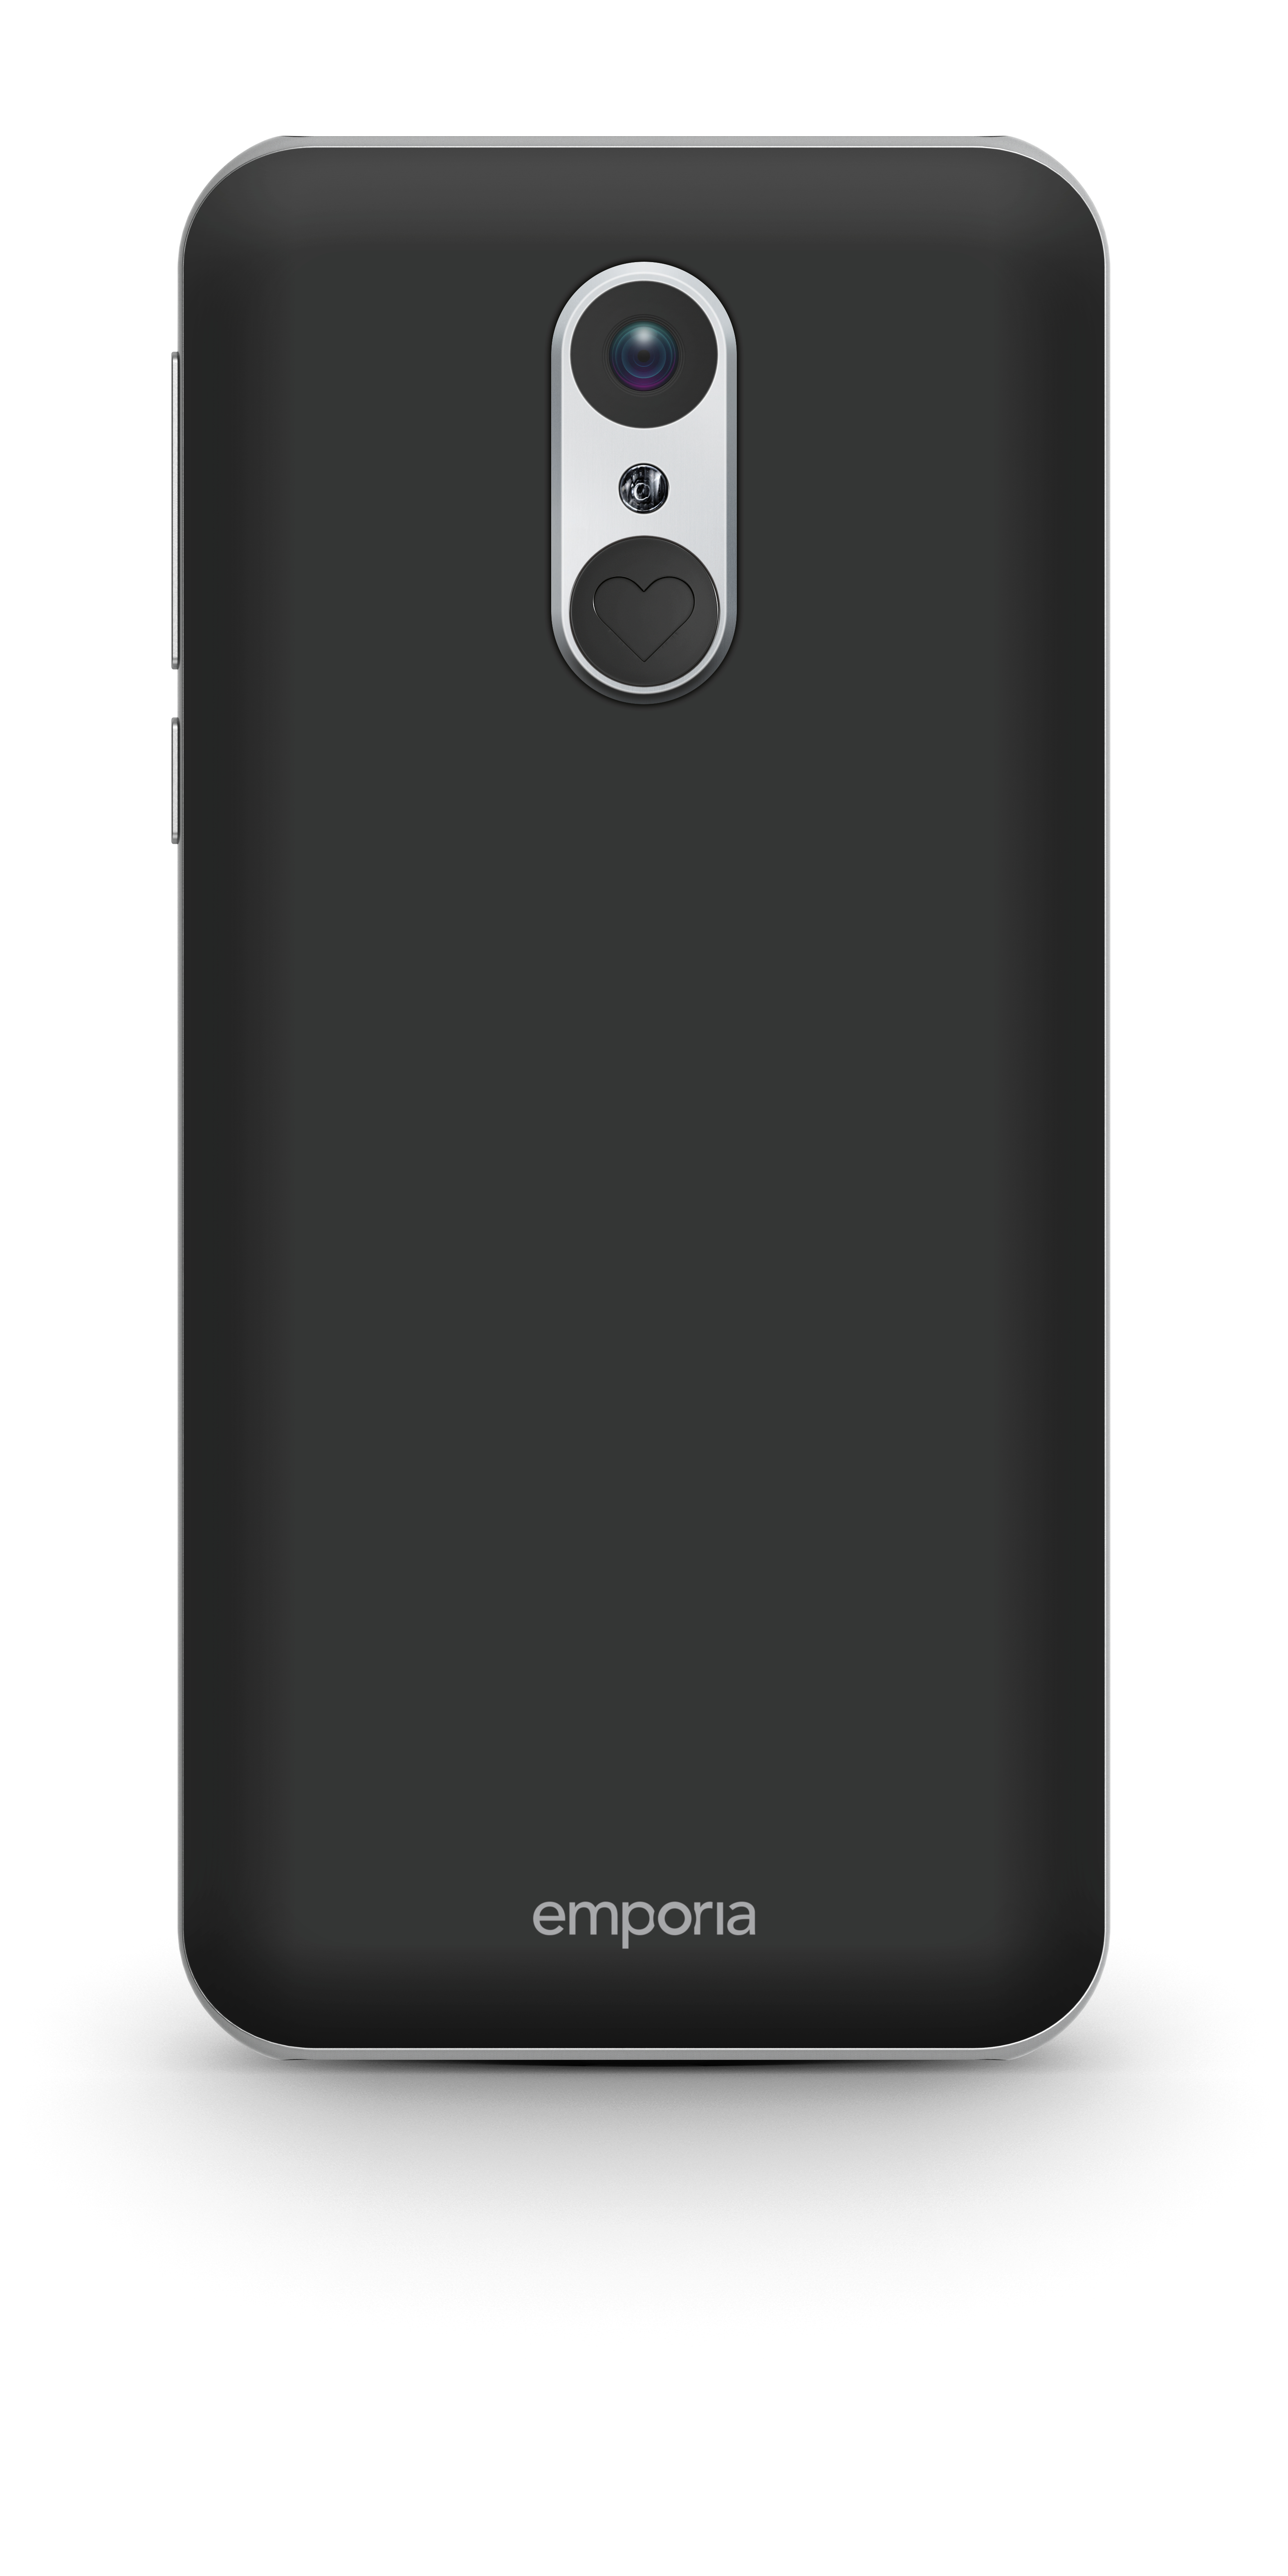 Emporia emporiaSMART.3 - 4G Smartphone - RAM 2 GB / Internal Memory 16 GB